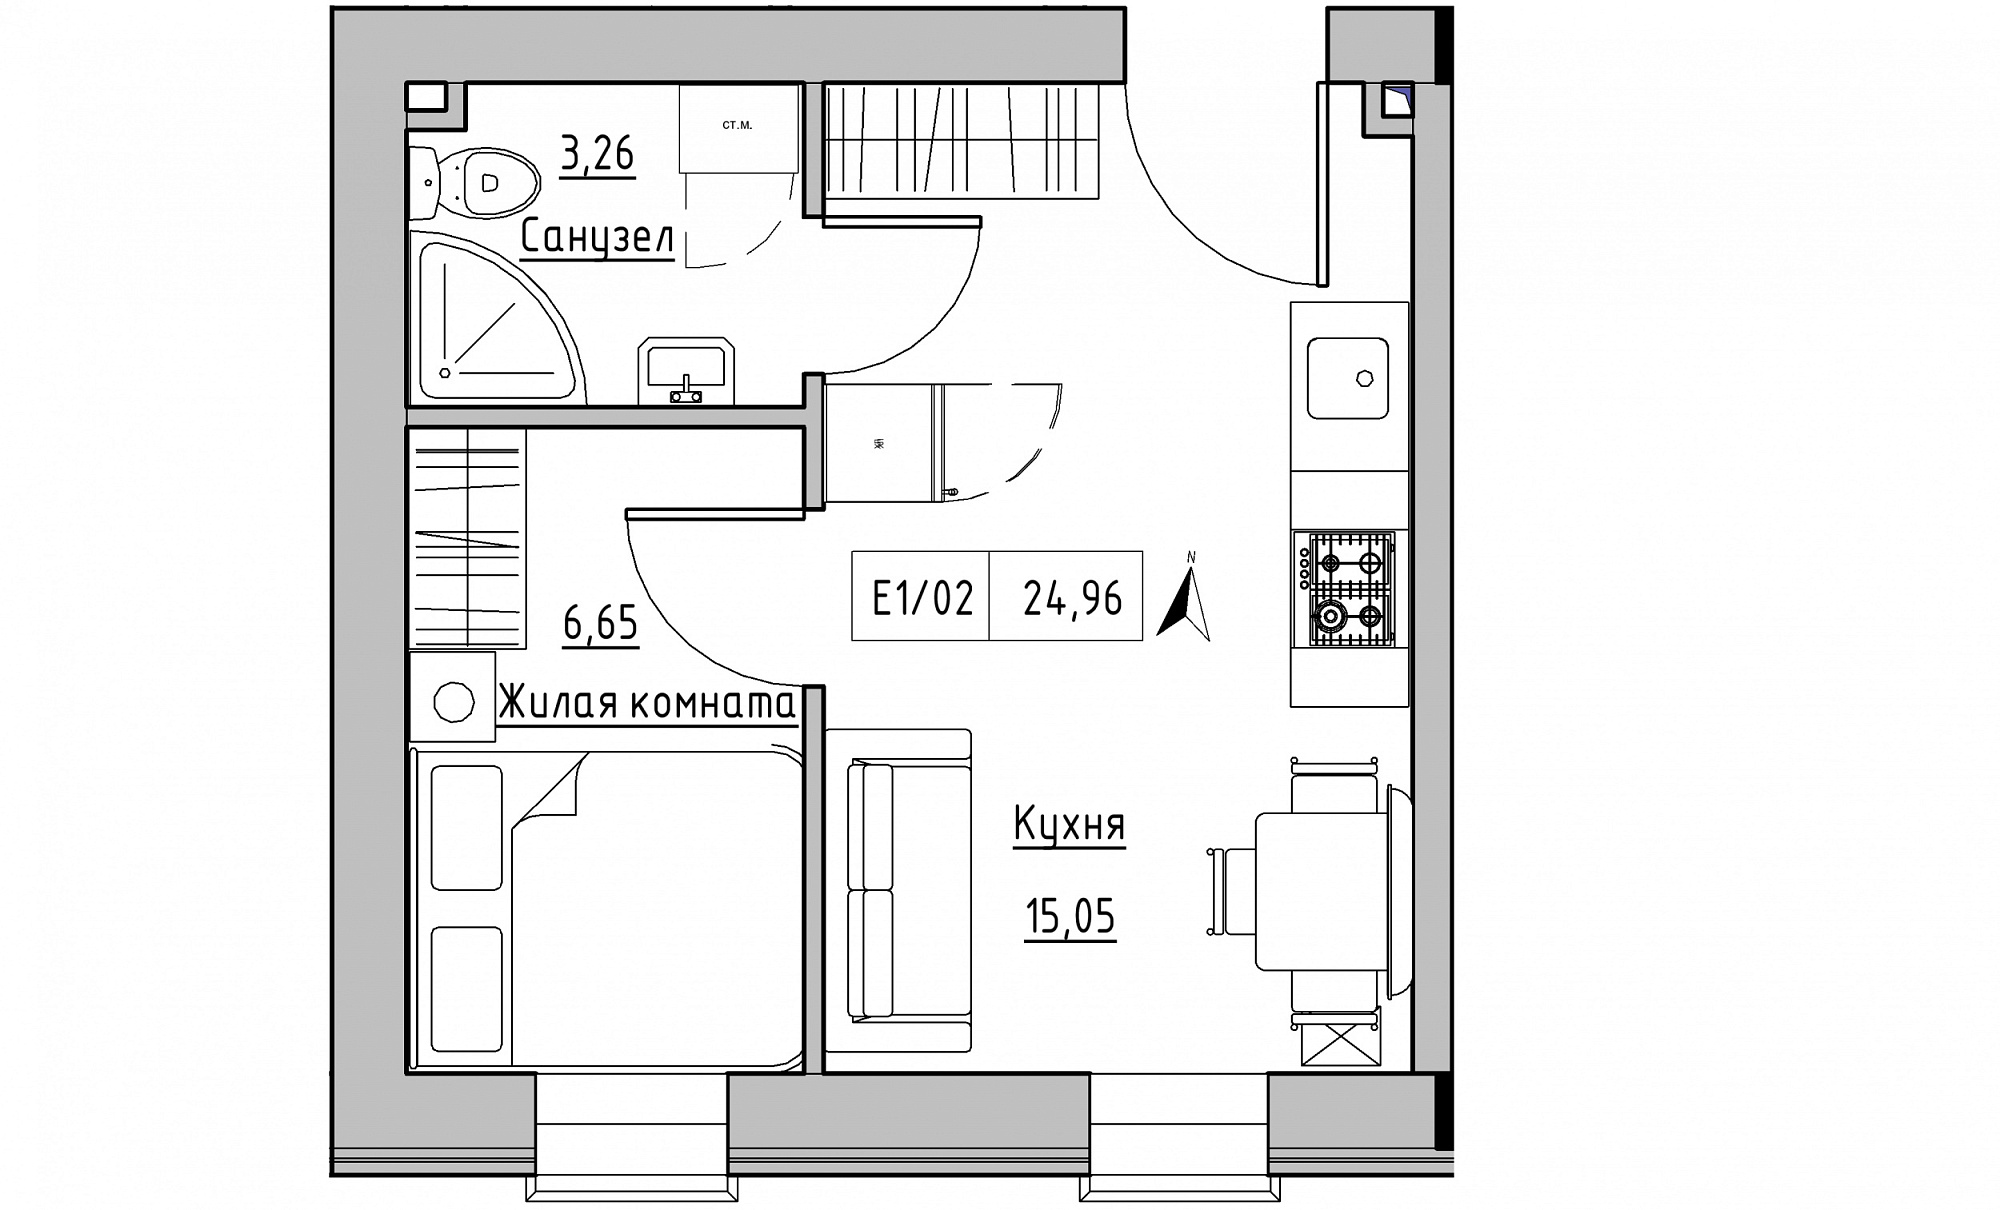 Планировка 1-к квартира площей 24.96м2, KS-015-05/0015.